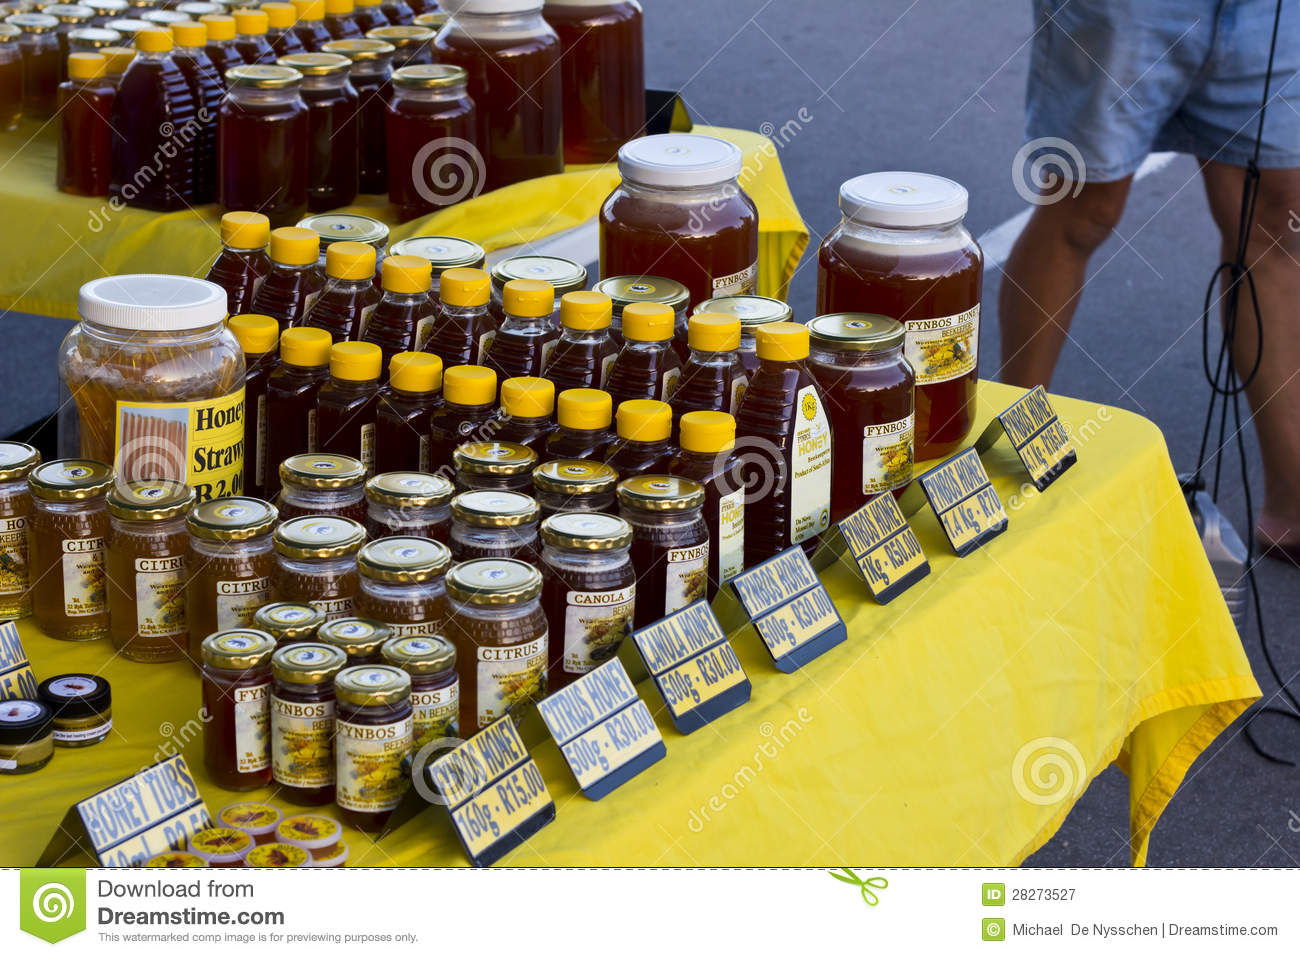 Produtos feitos a base de mel